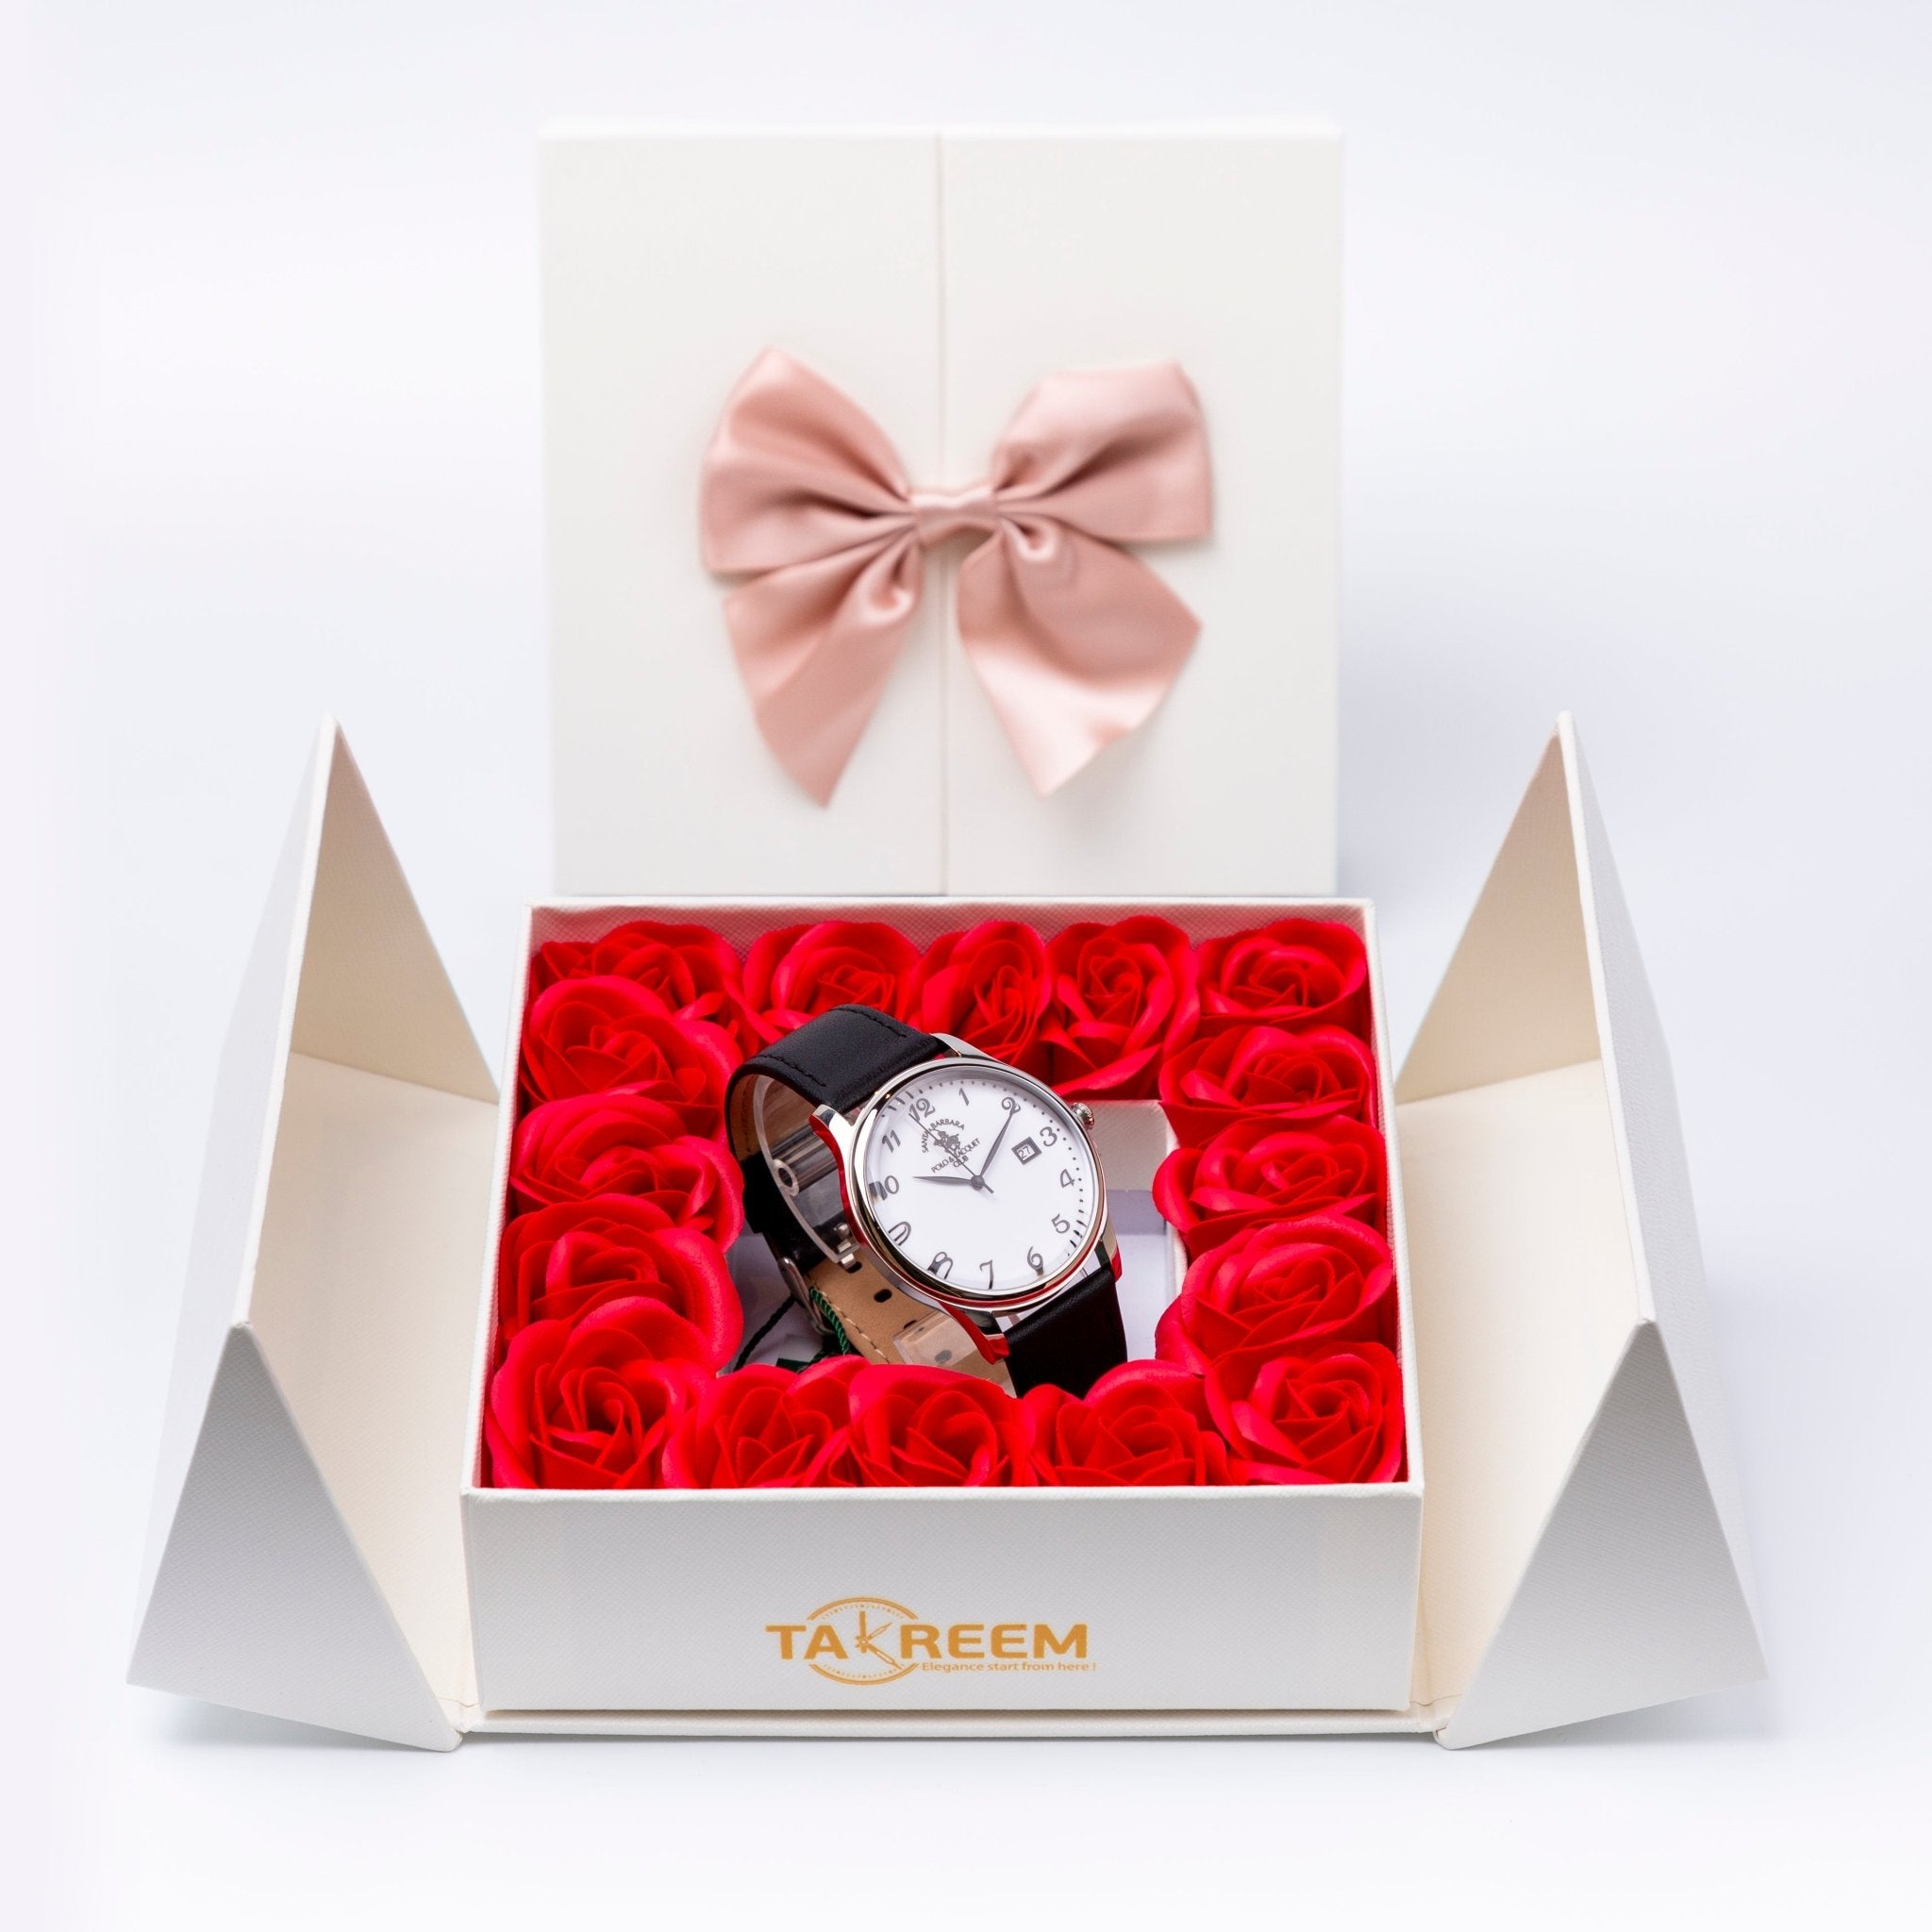 Flower Box - Gift For Men 21 - #shoFlower Box - Gift For Men 21p_name#Flower Box - Gift For Men 21Gift Boxes & TinsTakreemTakreem.joMenWatchFlower Box - Gift For Men 21 - Takreem.jo